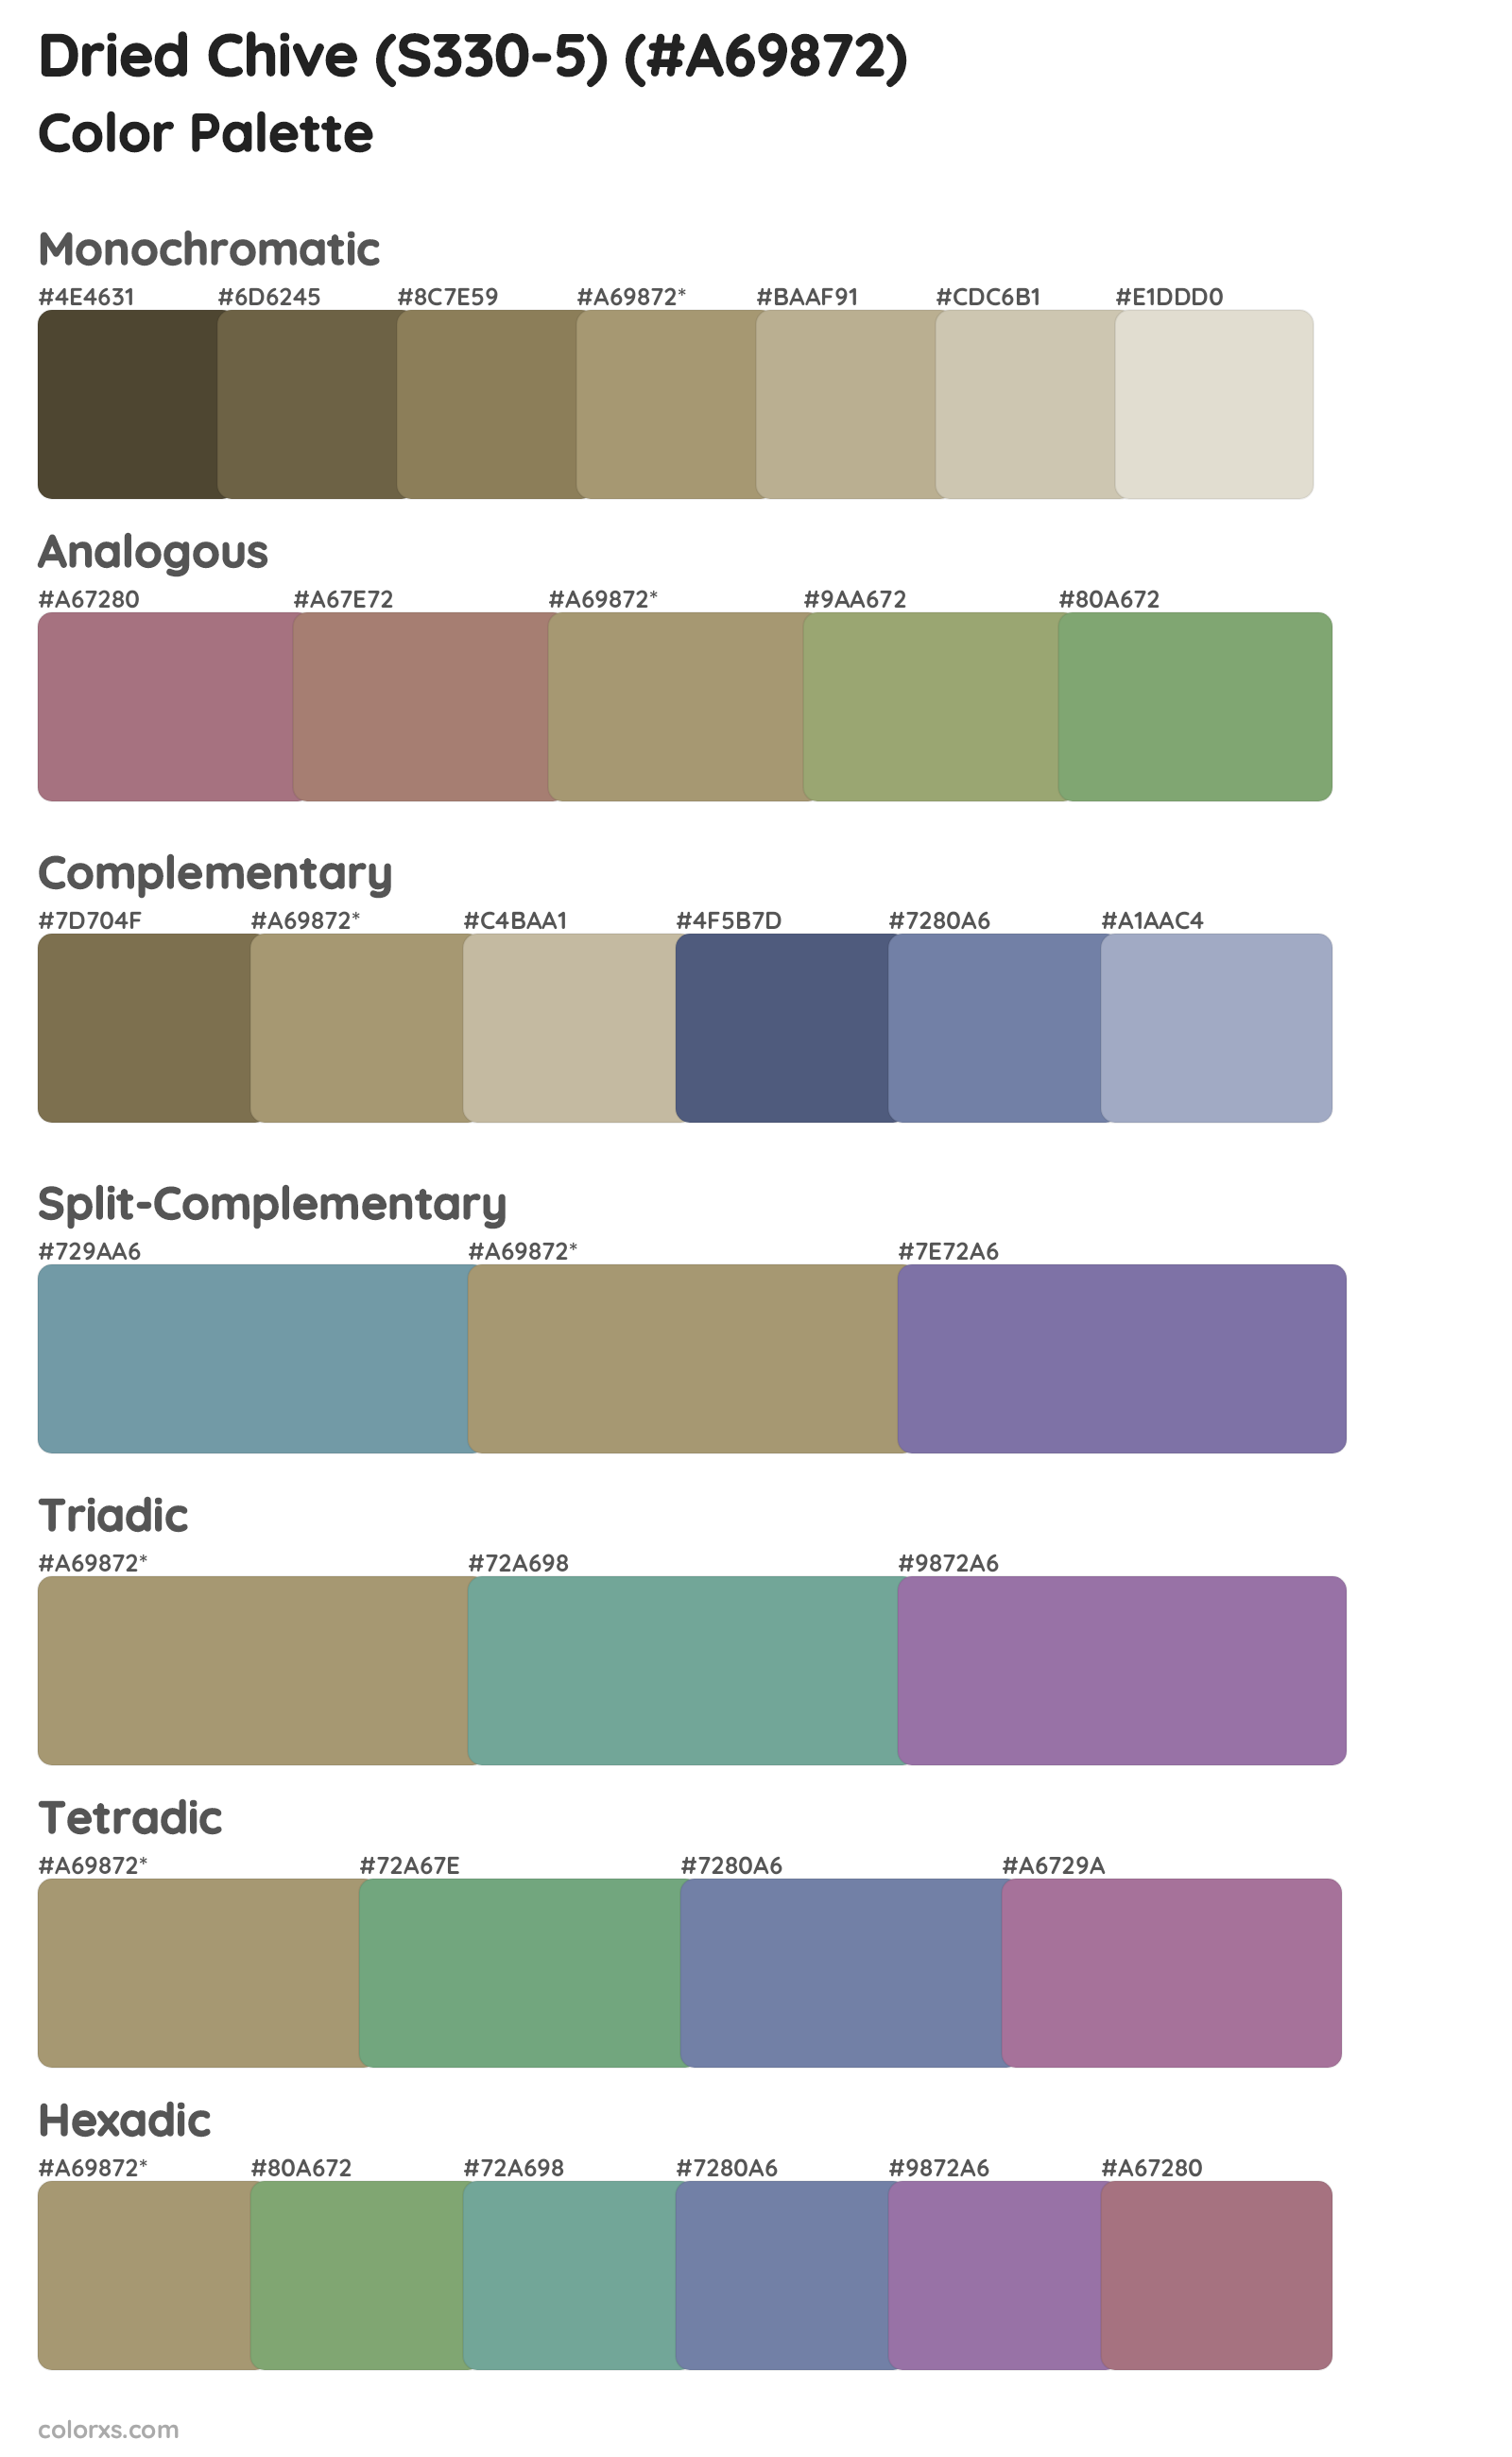 Dried Chive (S330-5) Color Scheme Palettes